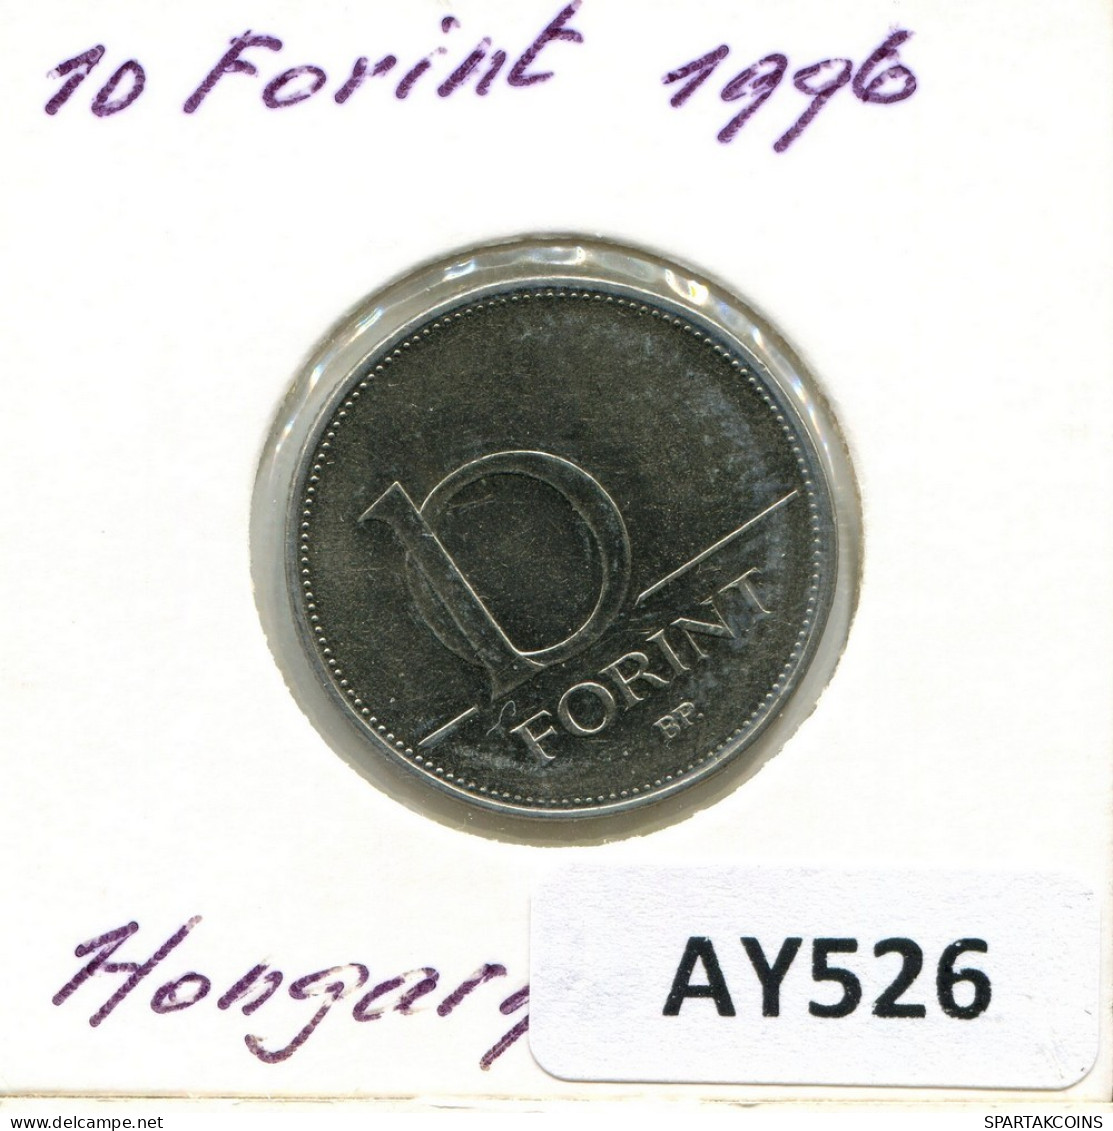 10 FORINT 1996 HUNGRÍA HUNGARY Moneda #AY526.E.A - Hungría